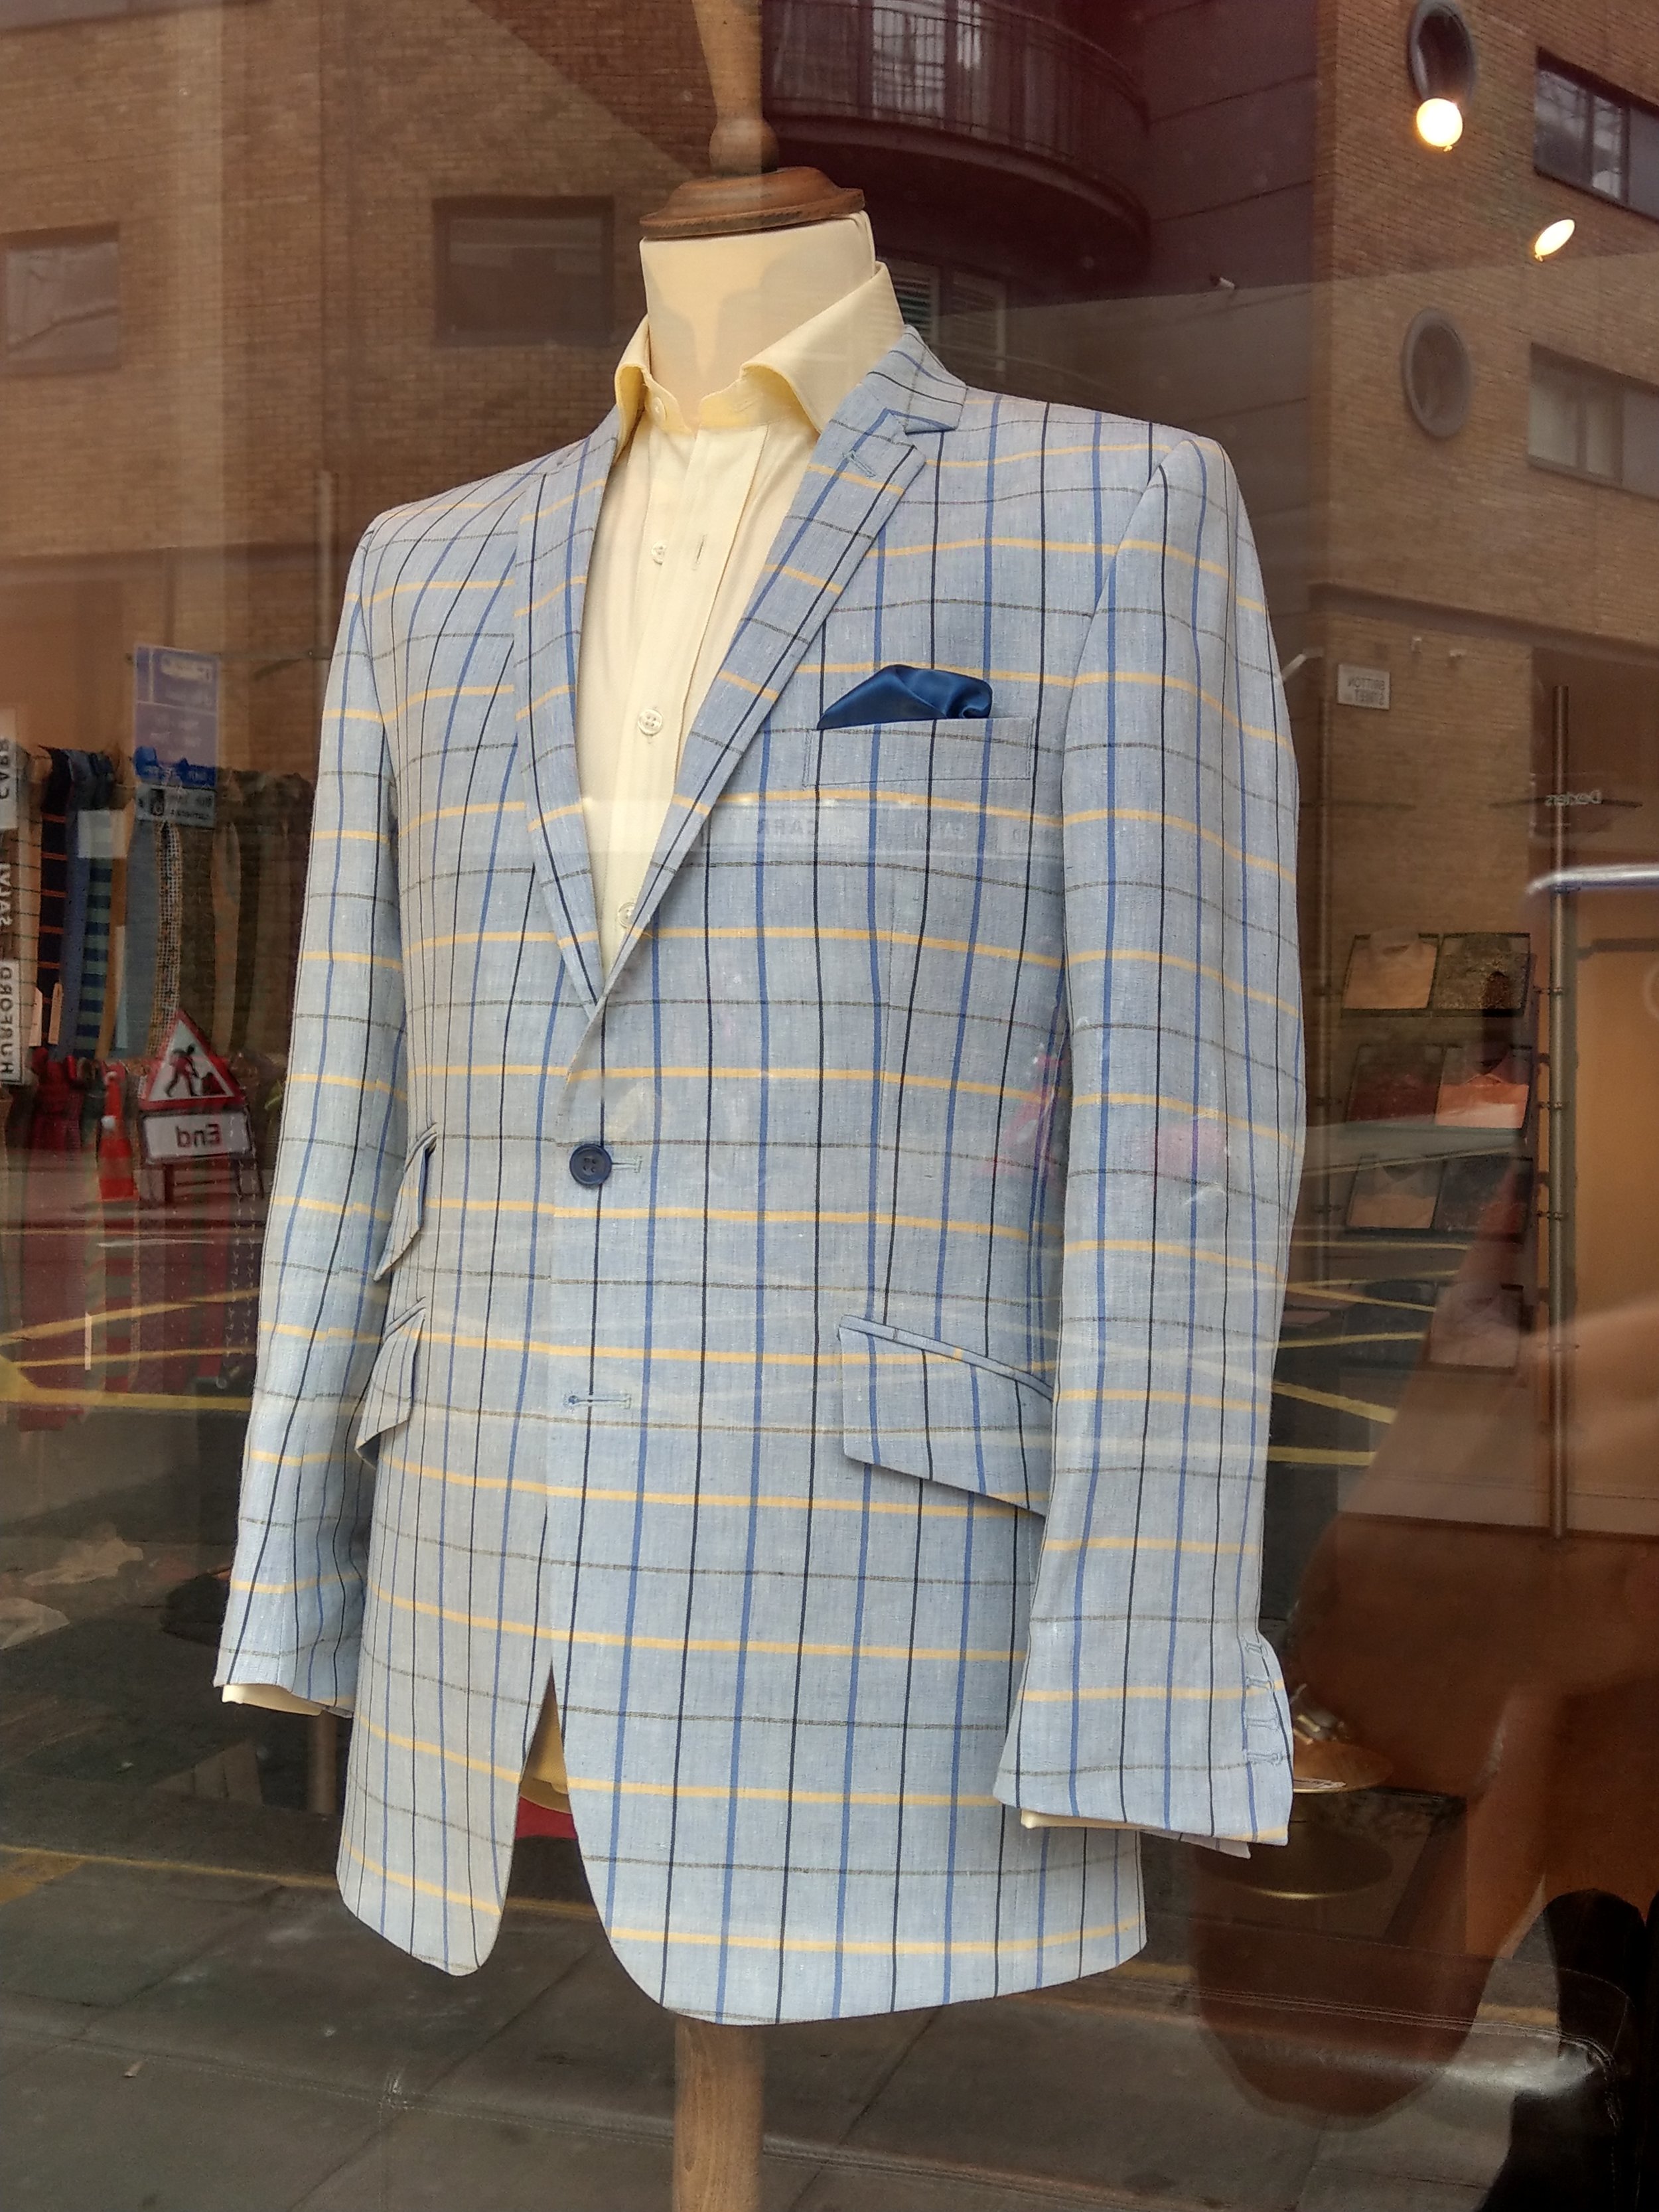 linen-jacket-bespoke-tailored-susannah-hall-bateman-ogden-ringhart-shirt-made-britain-uk.jpg